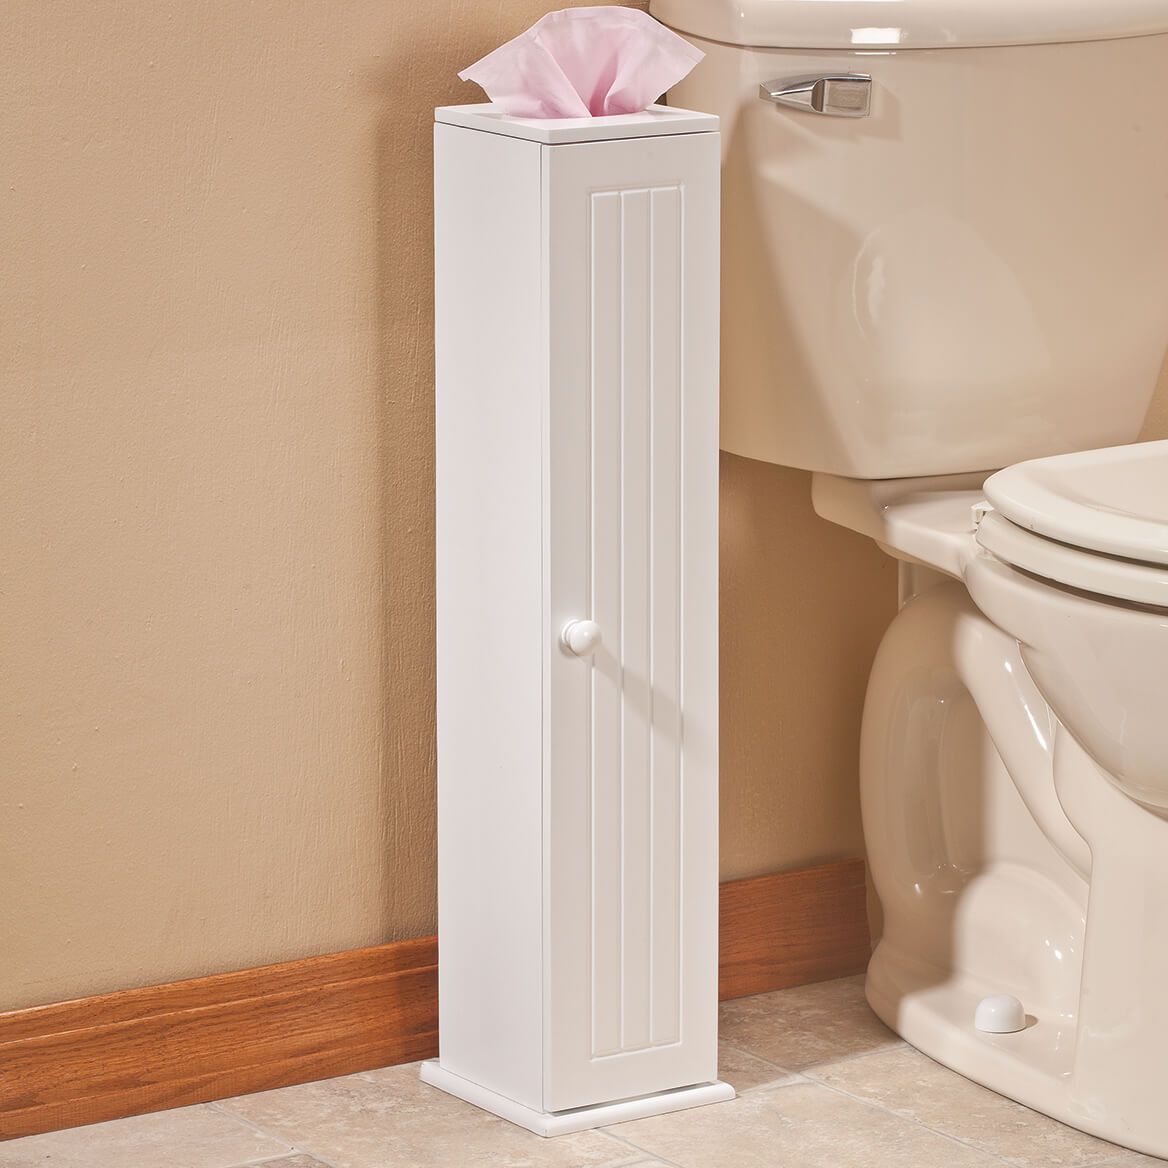 Toilet Tissue Tower by OakRidge™ + '-' + 352695